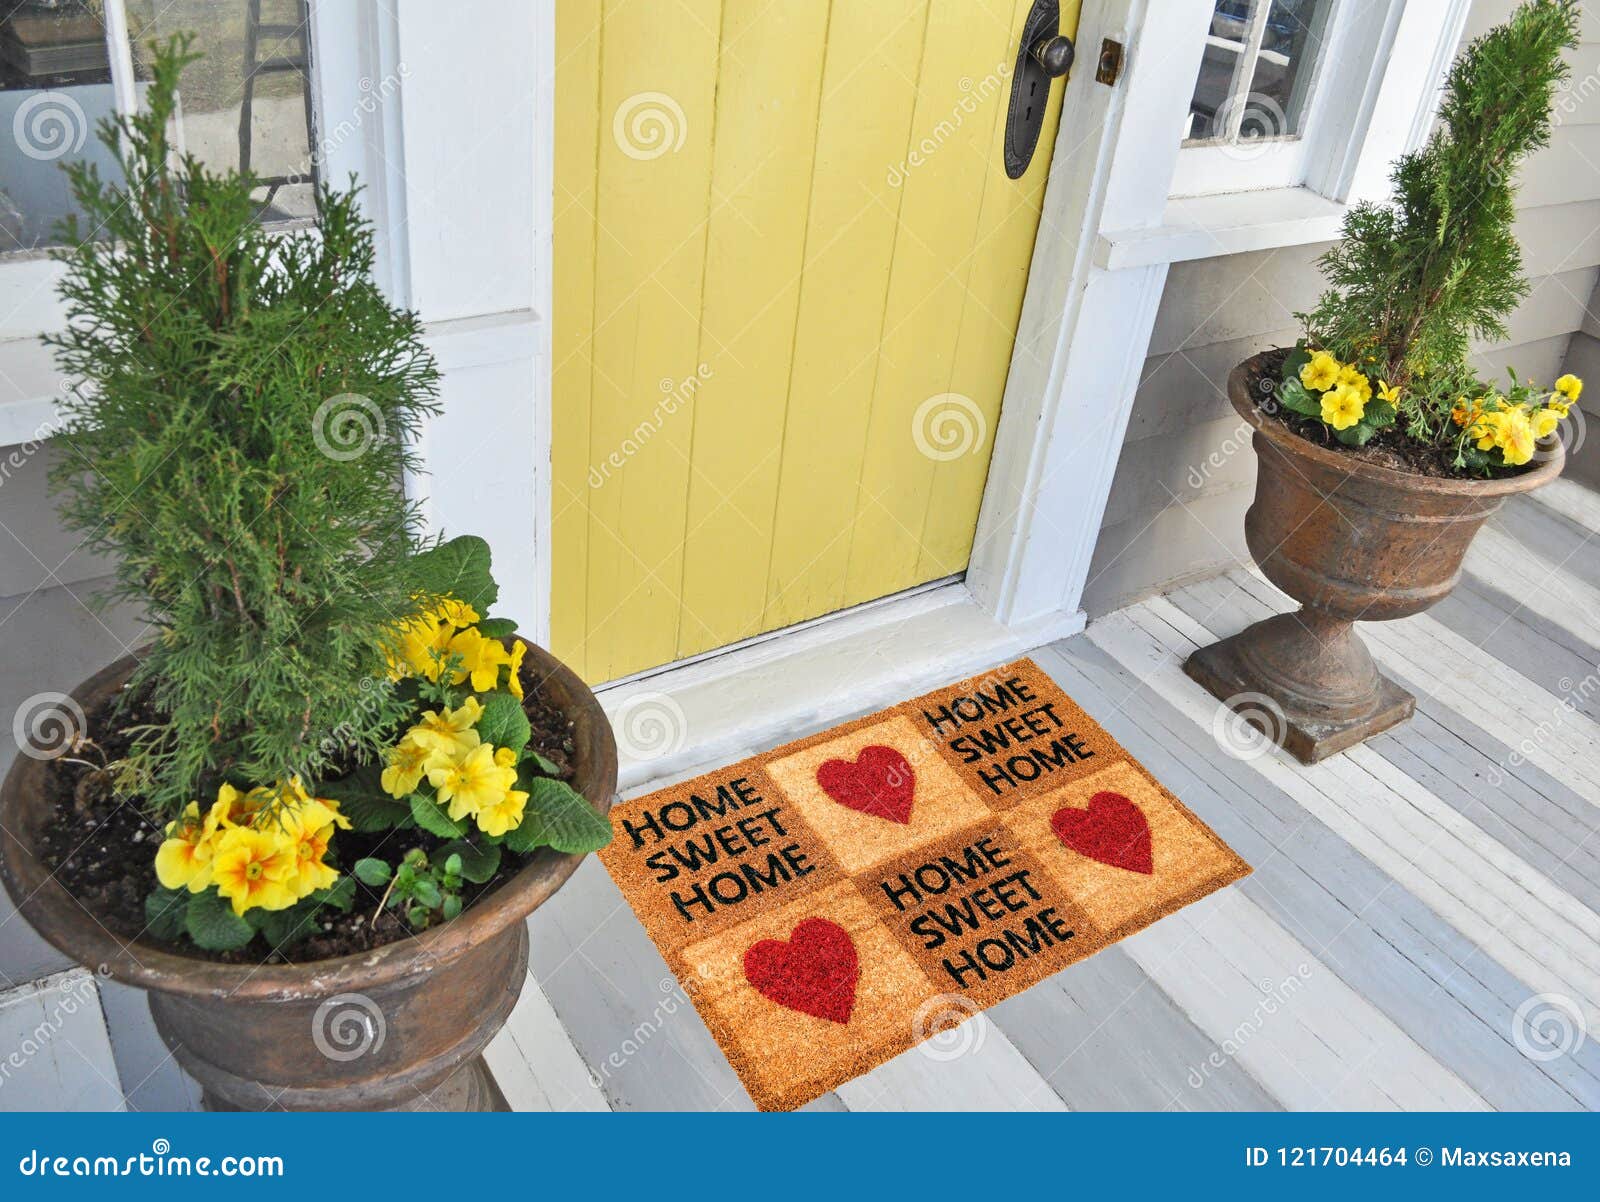 Welcome Mat Inside Doorway Of Home Stock Photo - Download Image